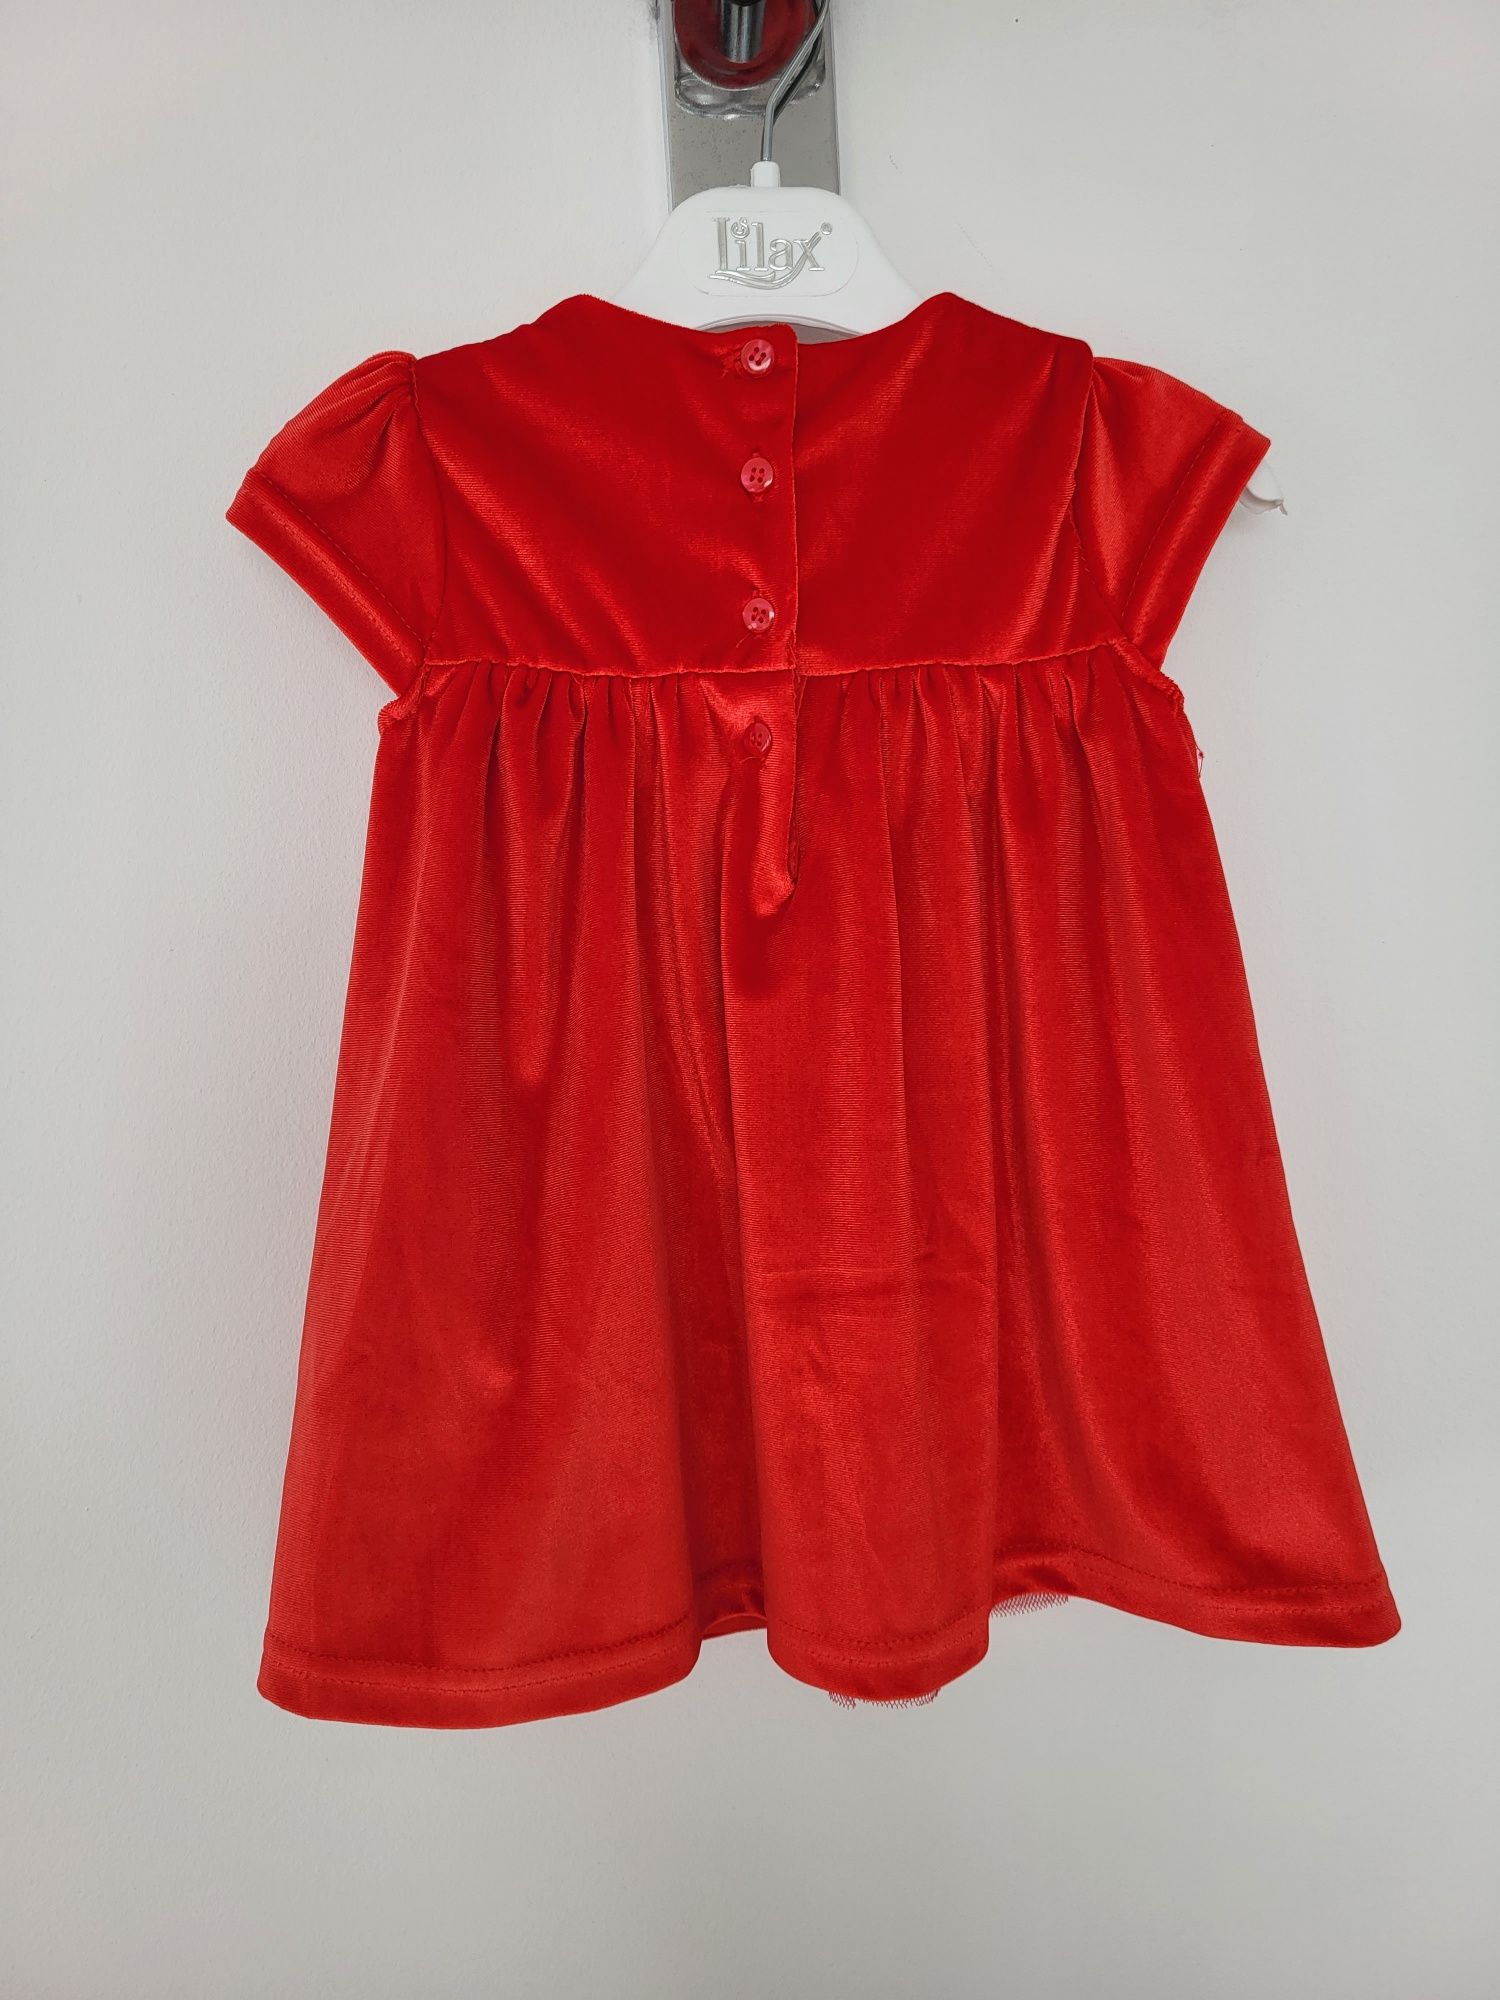 Elegancka sukienka 74 czerwona dla dziewczynki welurowa